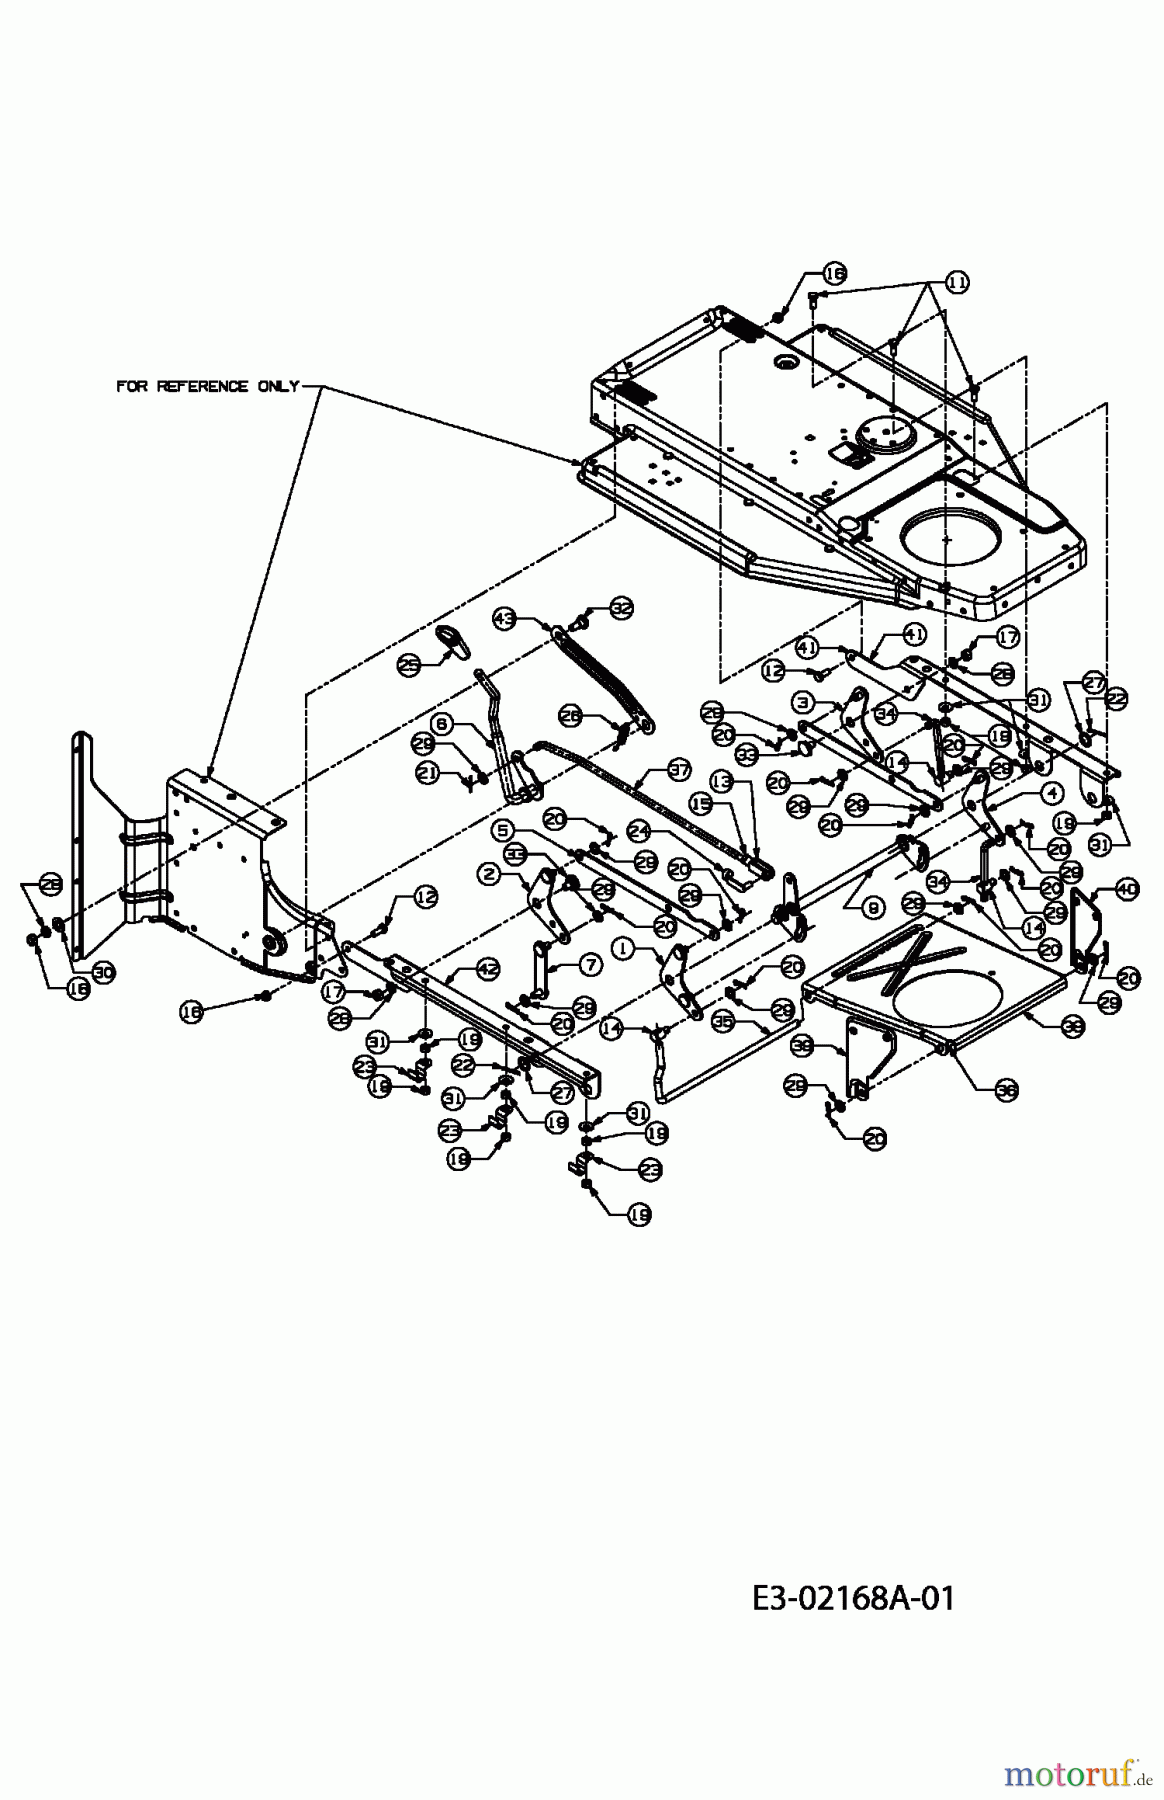  MTD ältere Modelle Rasentraktoren RH 125/92 13D1452E600  (2004) Mähwerksaushebung